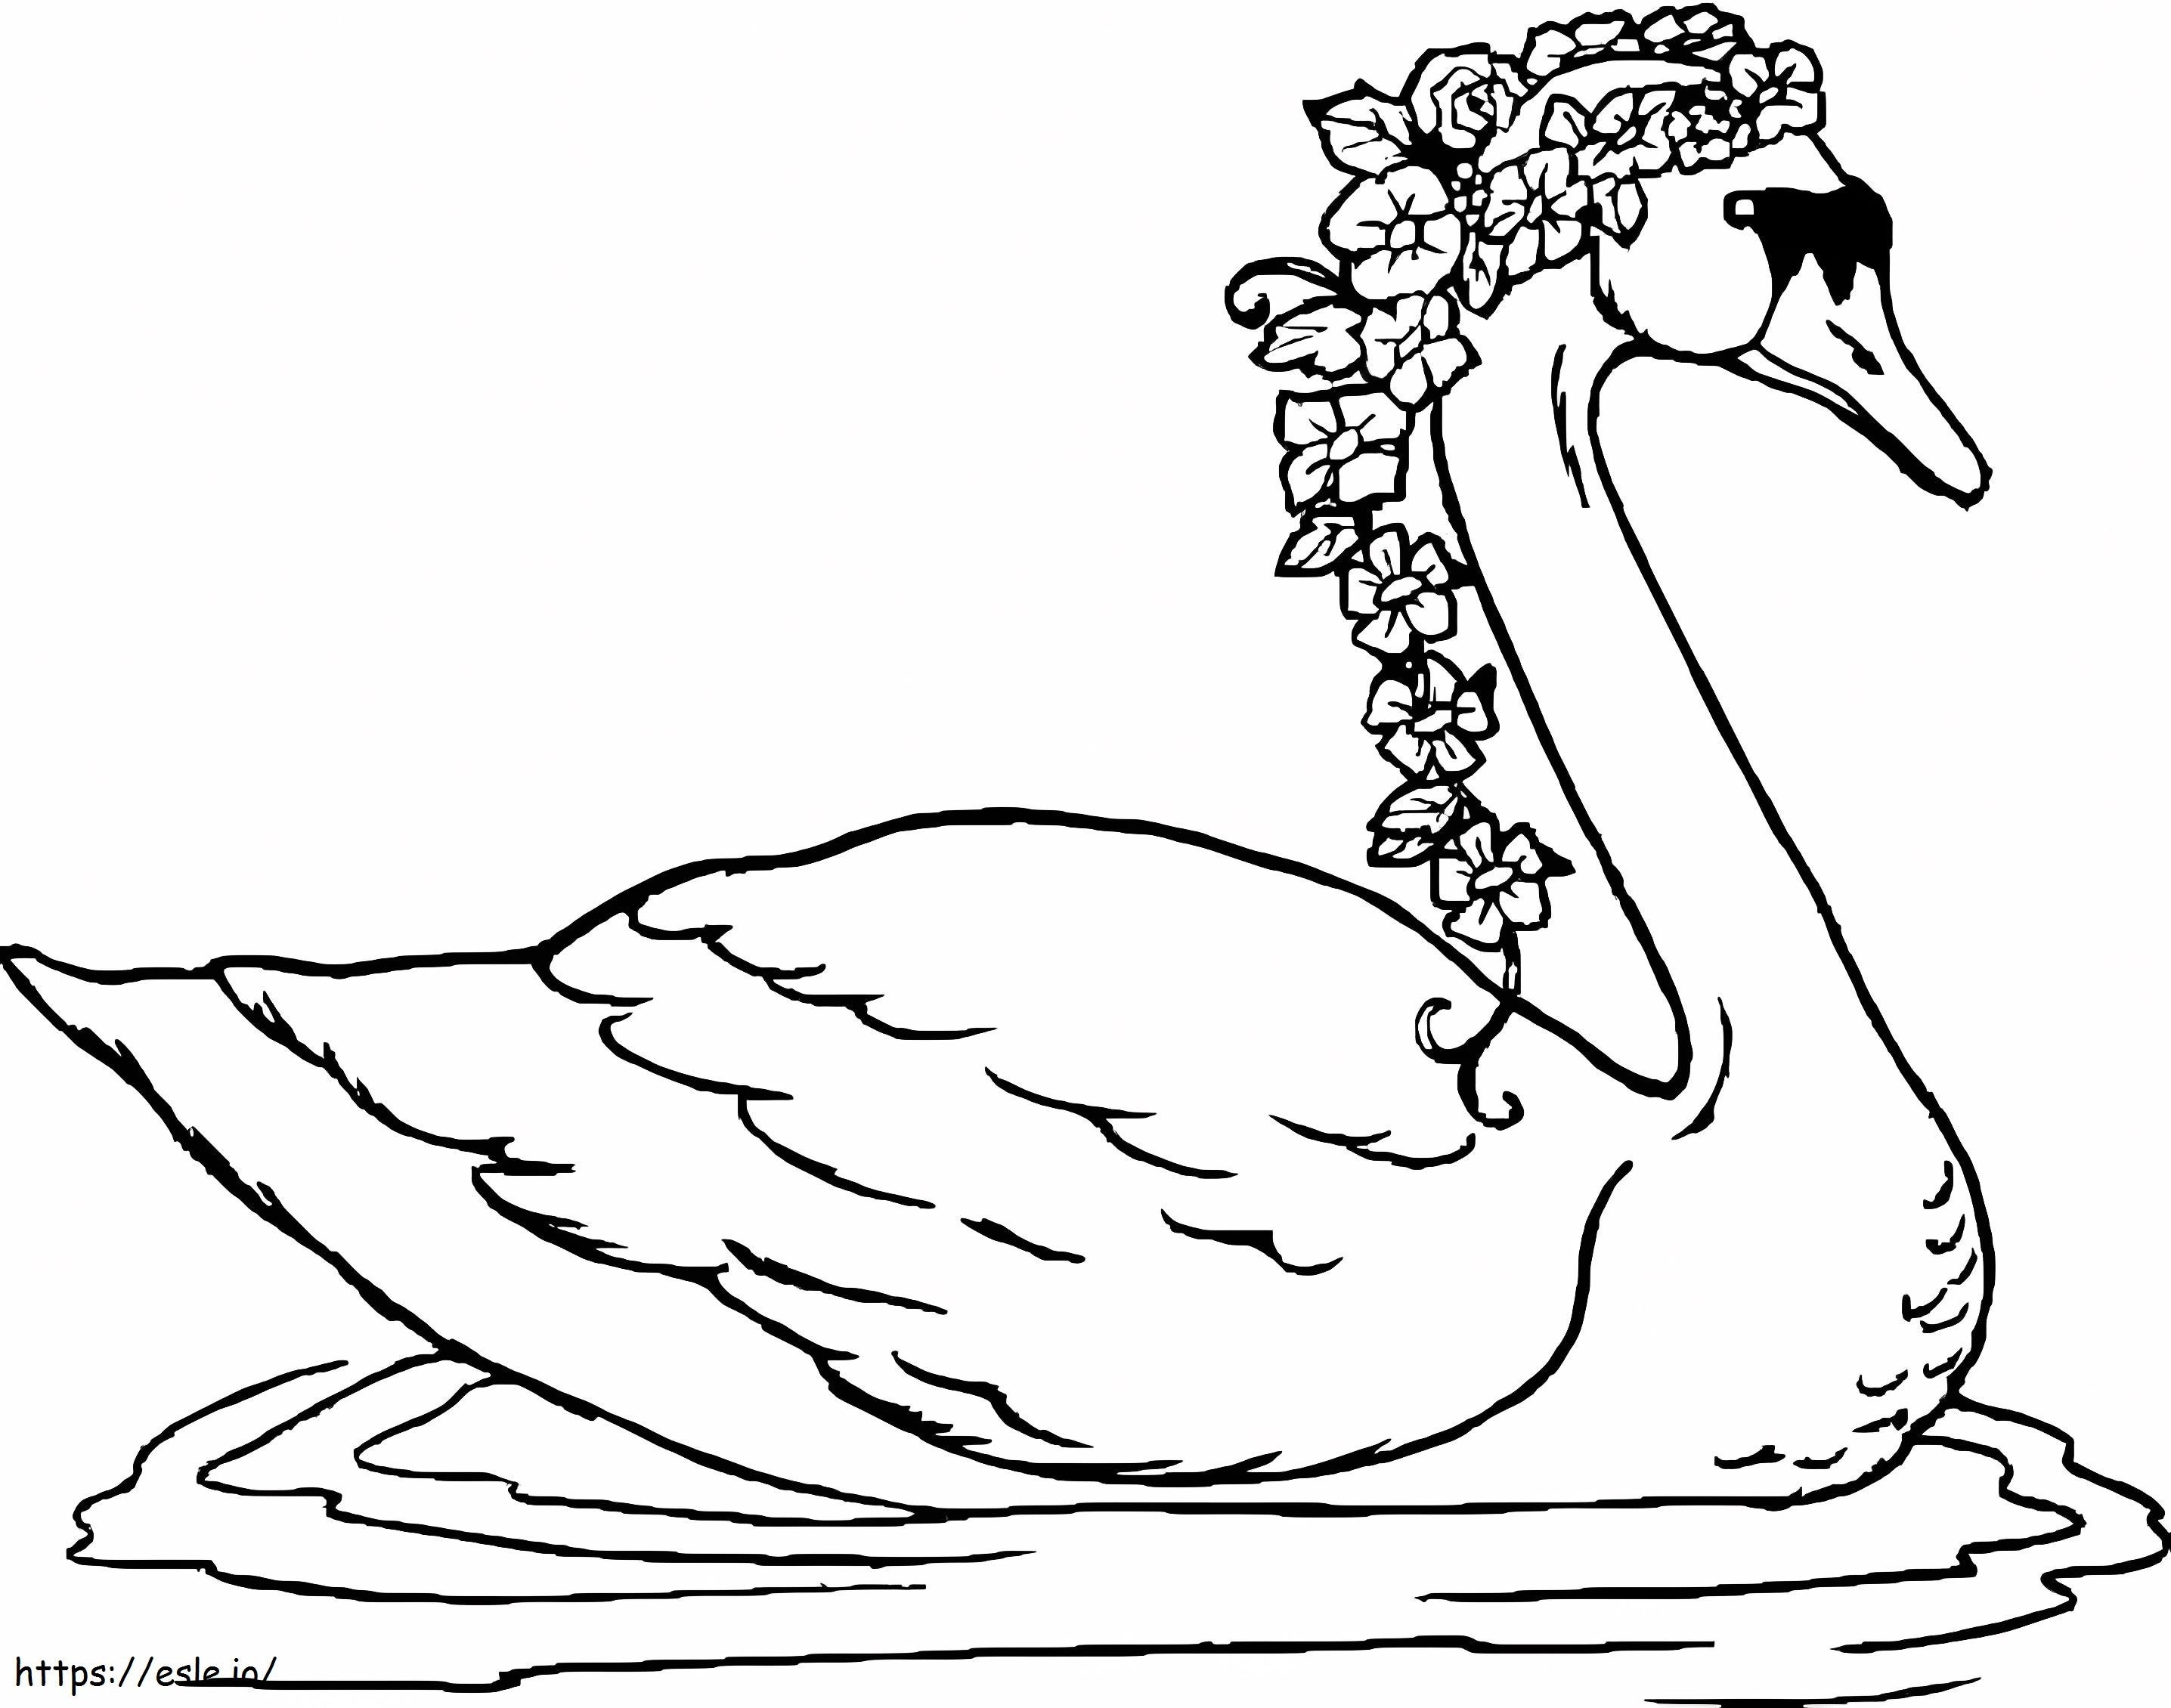 Wonderful Swan coloring page